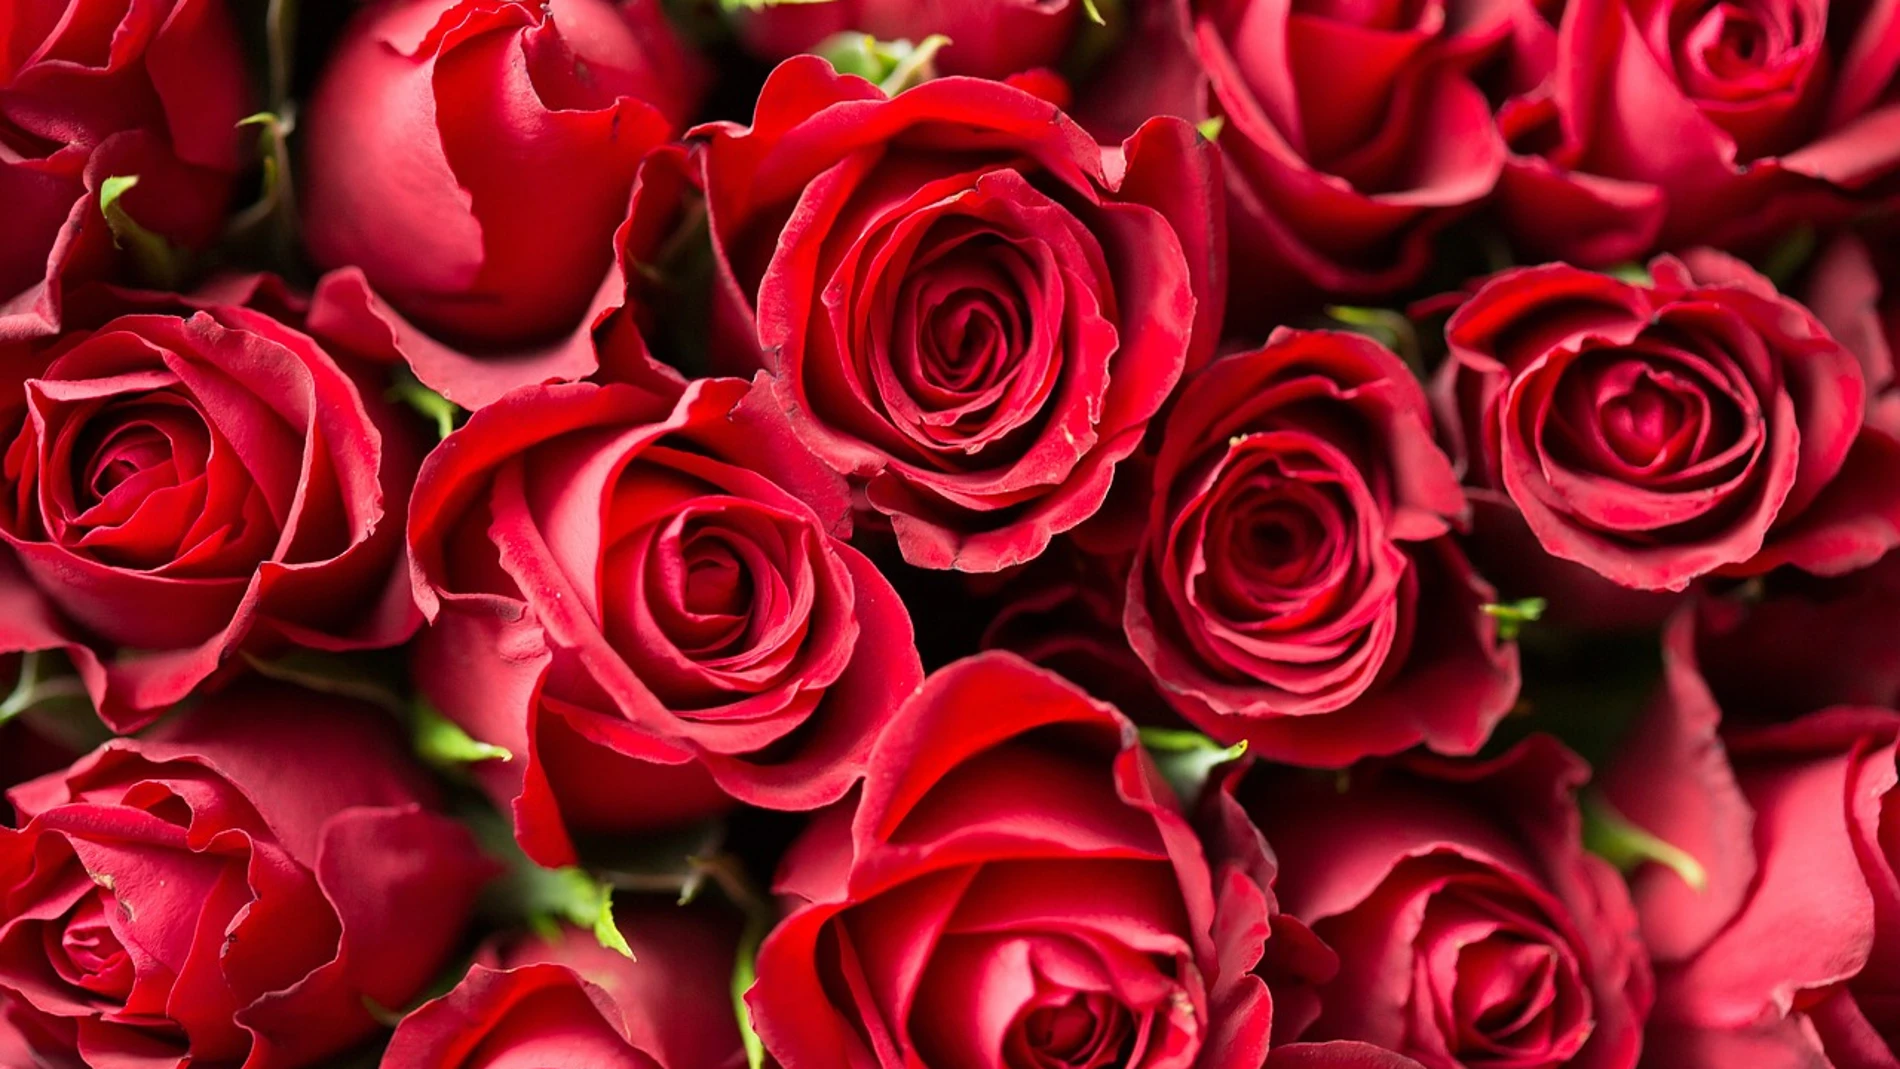 Cómo cuidar tu ramo de rosas de San Valentín y conservarlo el mayor tiempo posible